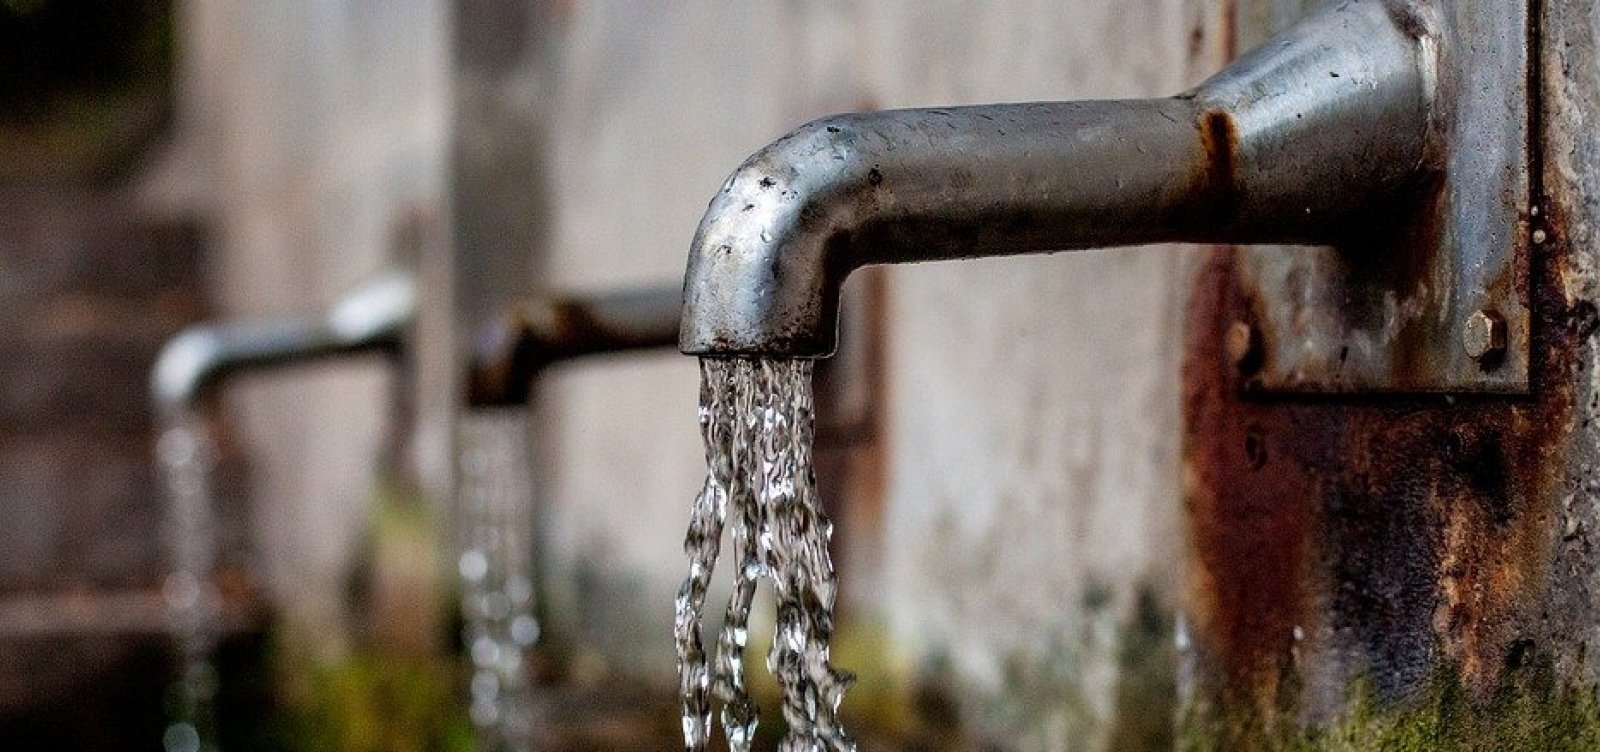 Abastecimento de água é interrompido em 21 bairros de Salvador